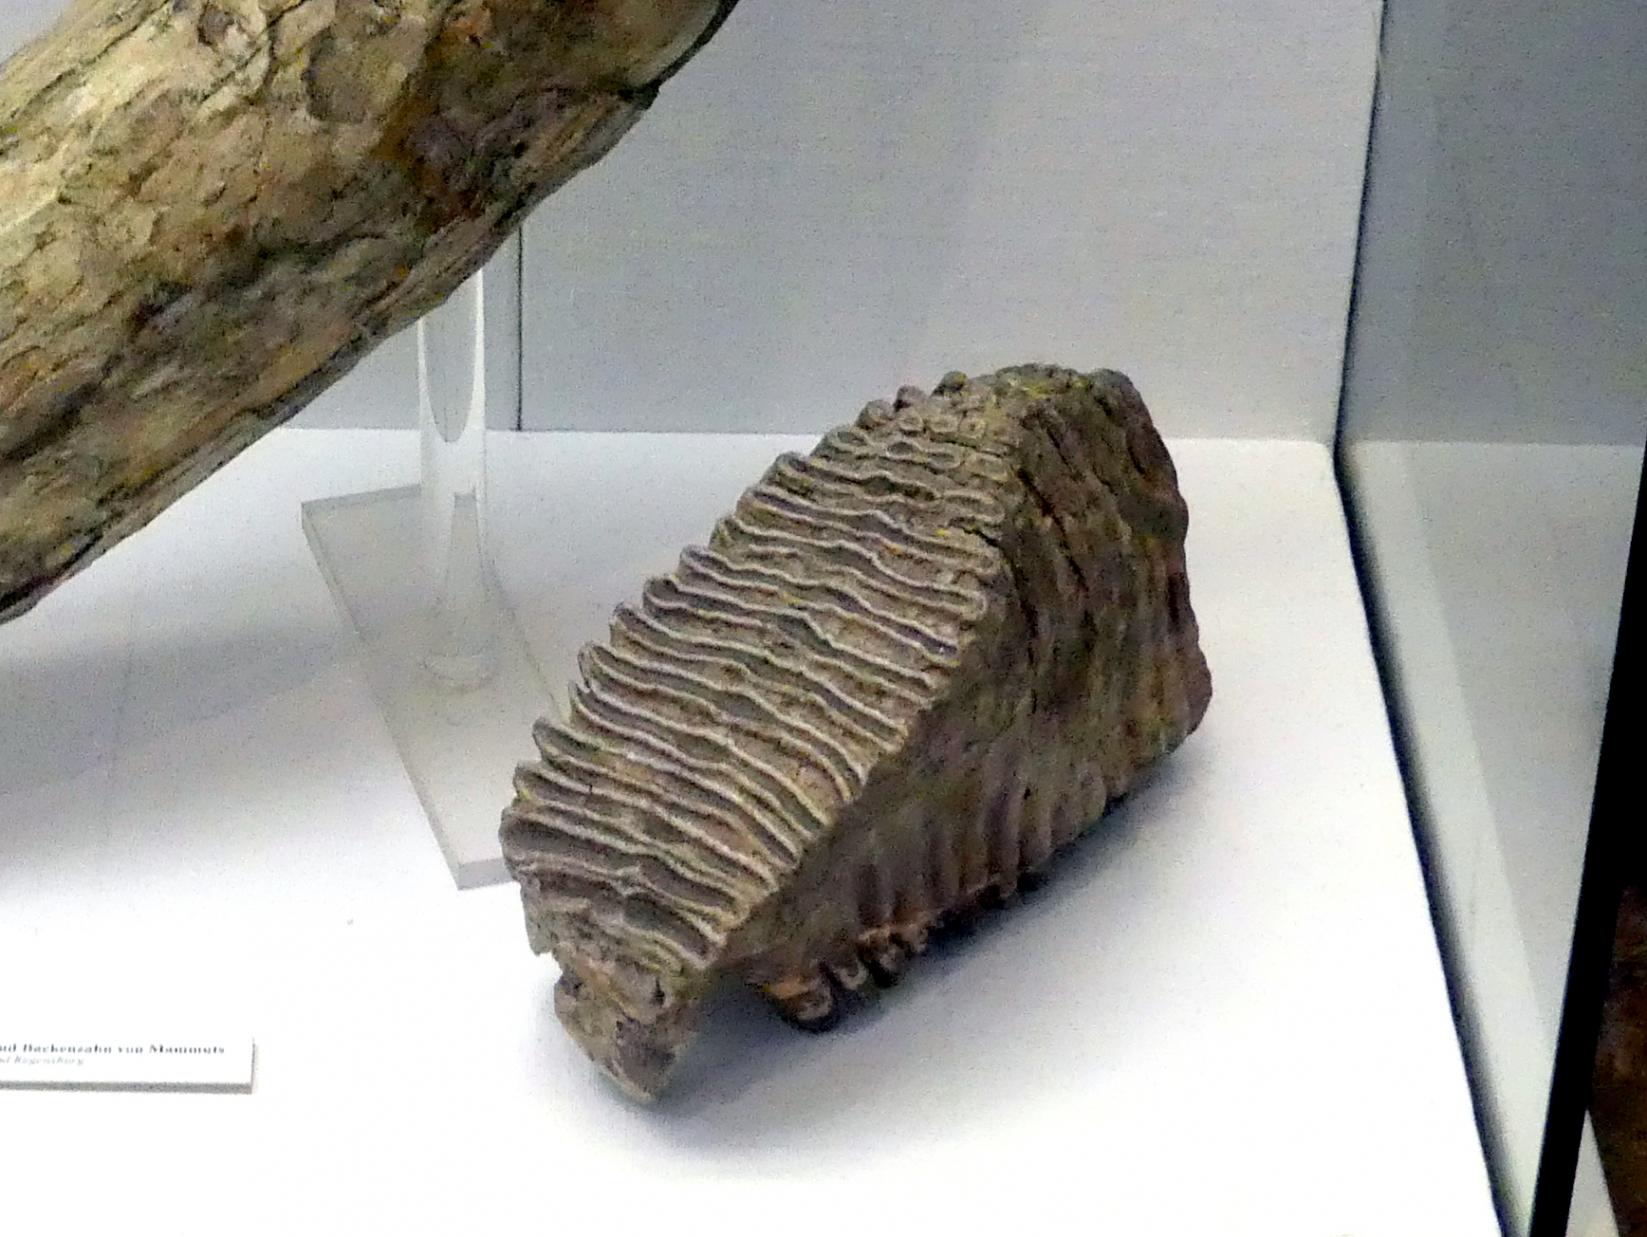 Backenzahn eines Mammuts, Paläolithikum, 600000 - 10000 v. Chr., Bild 1/2